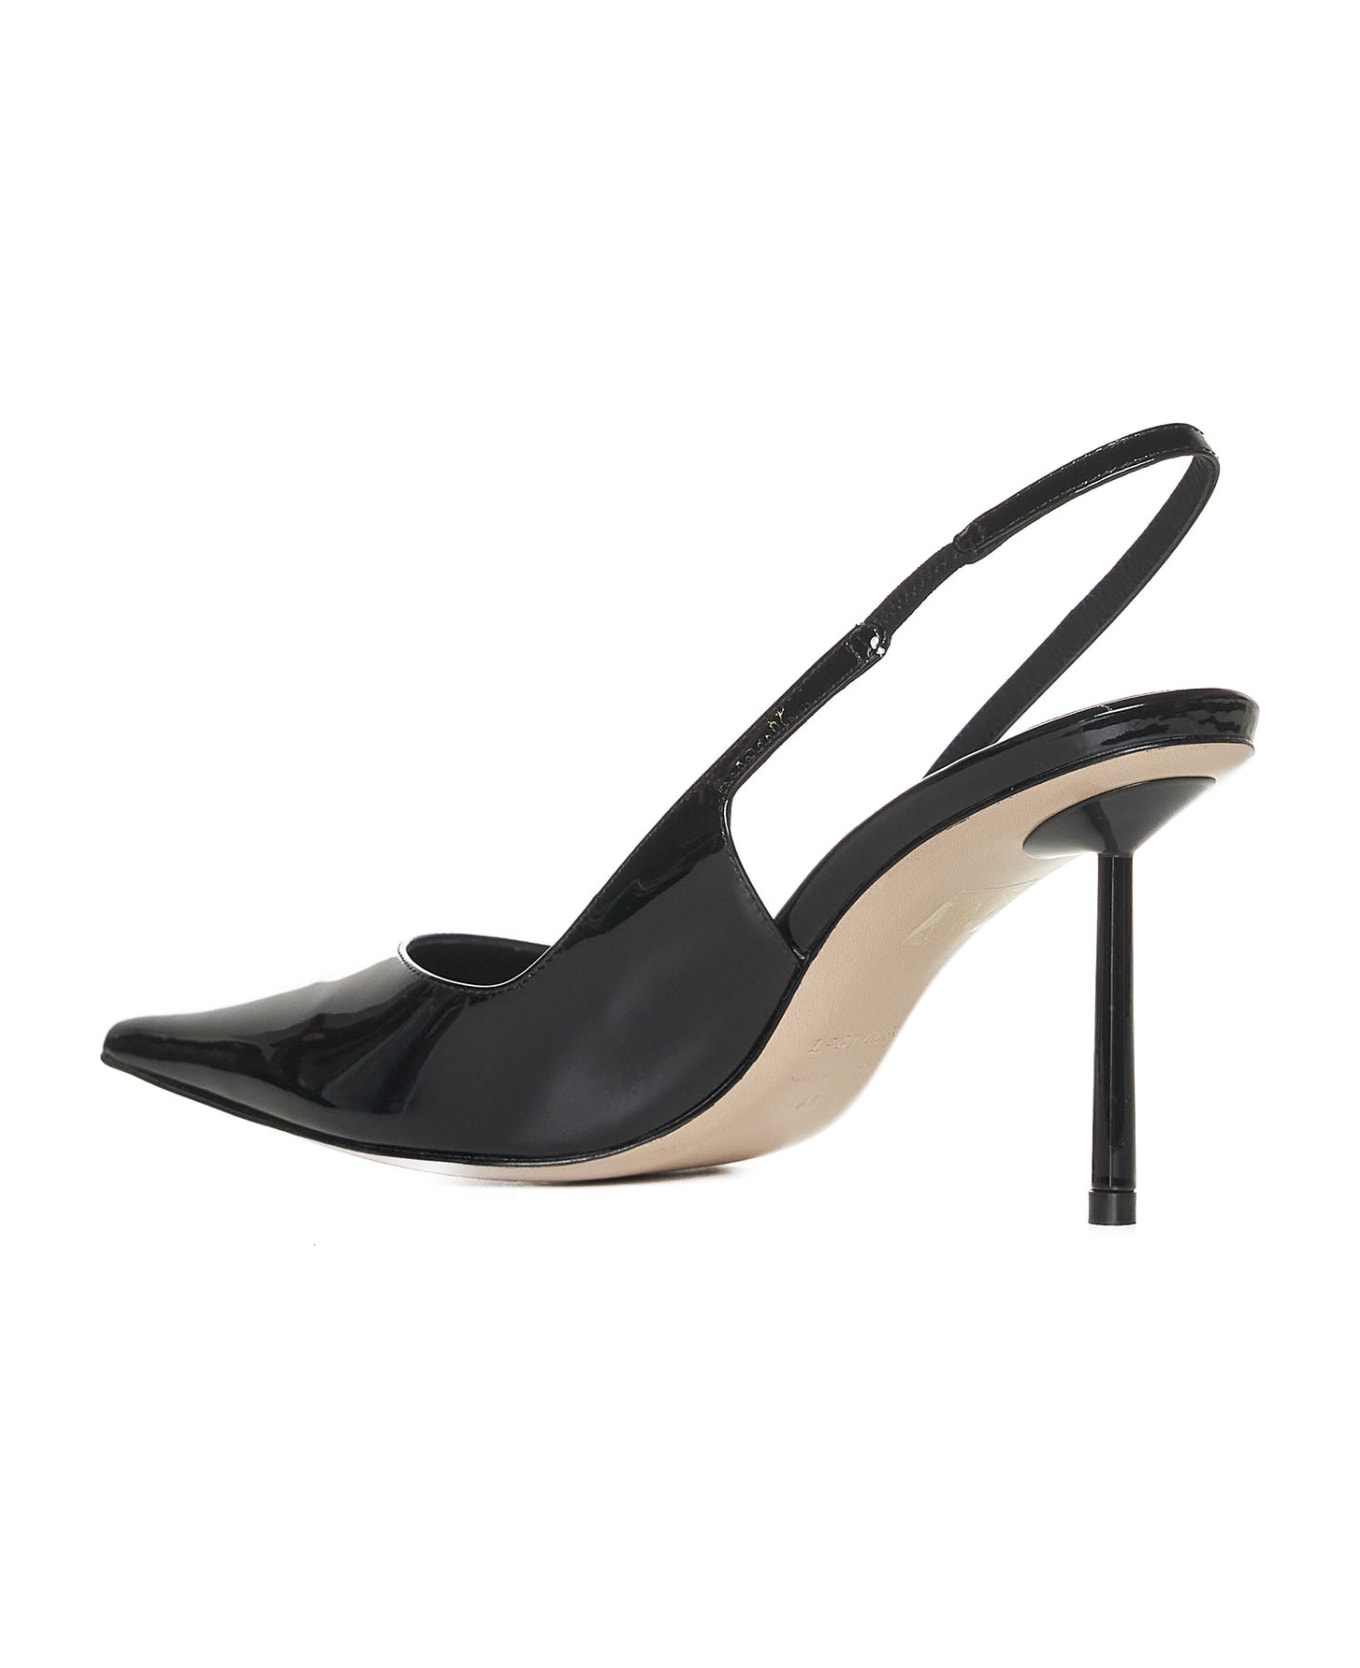 Le Silla High-heeled shoe - Nero